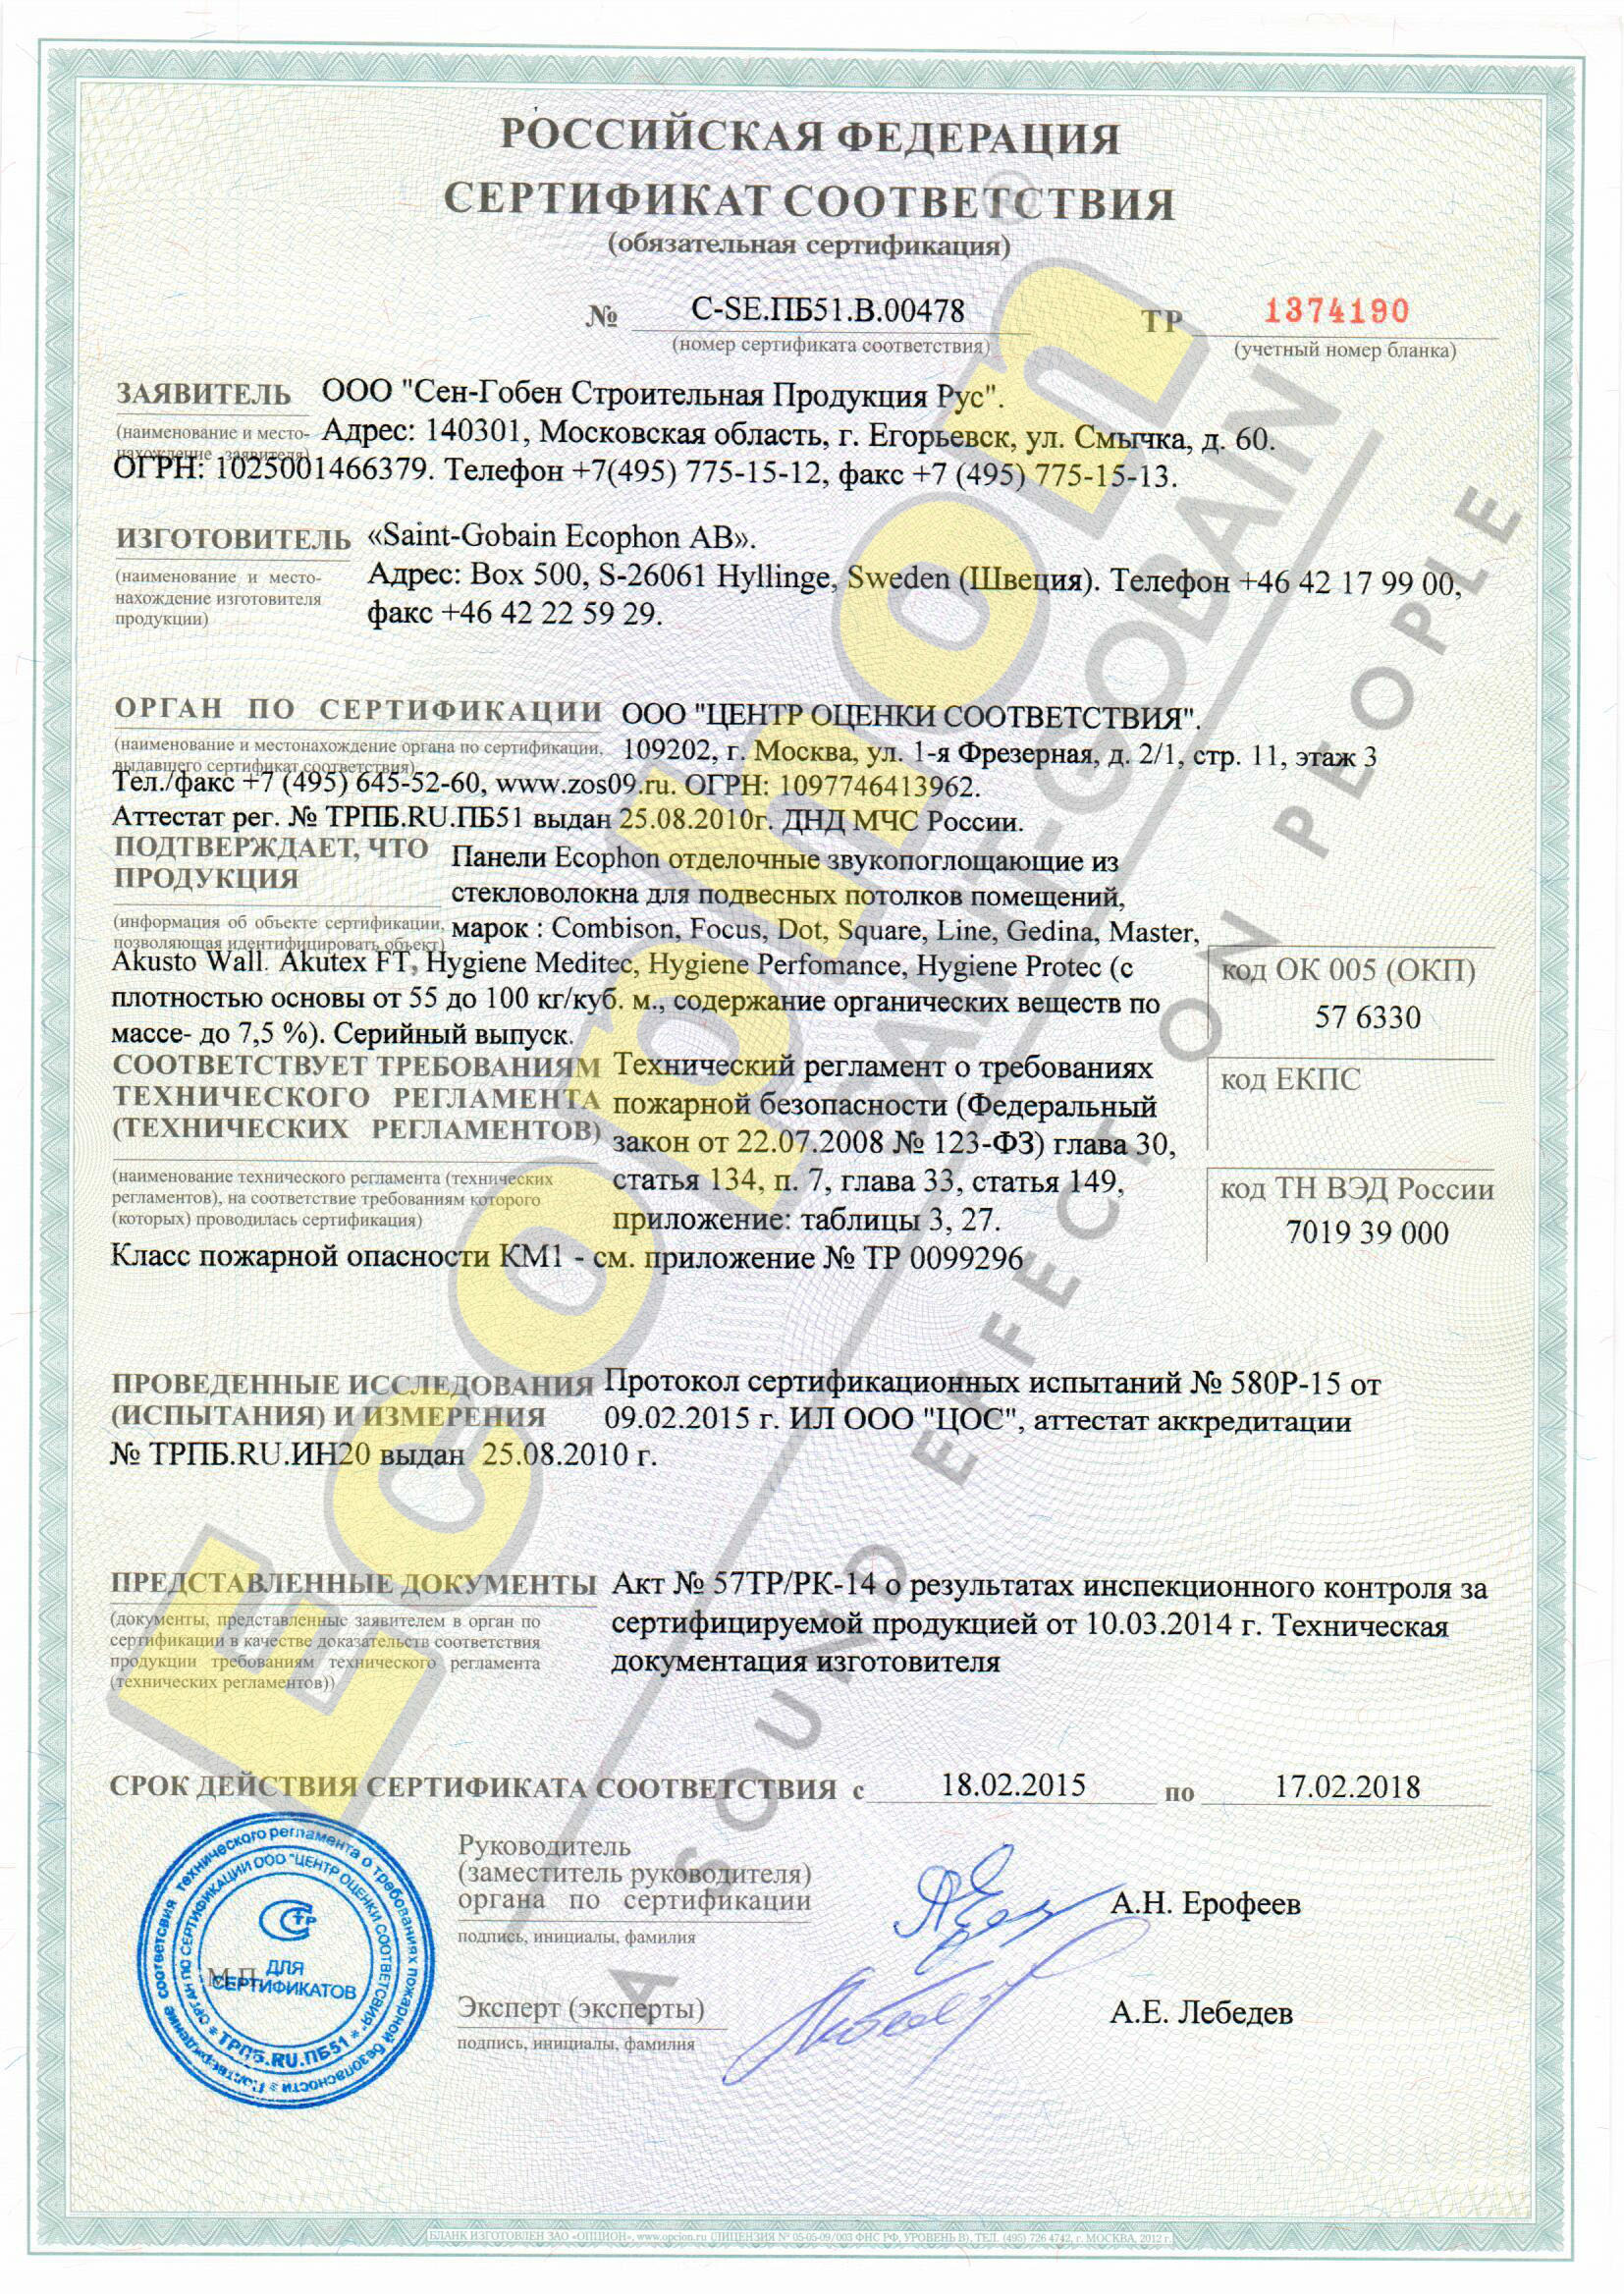 Сертификат соответствия ( панели Ecophon отделочные звукопоглощающие из стекловолокна для подвесных потолков)